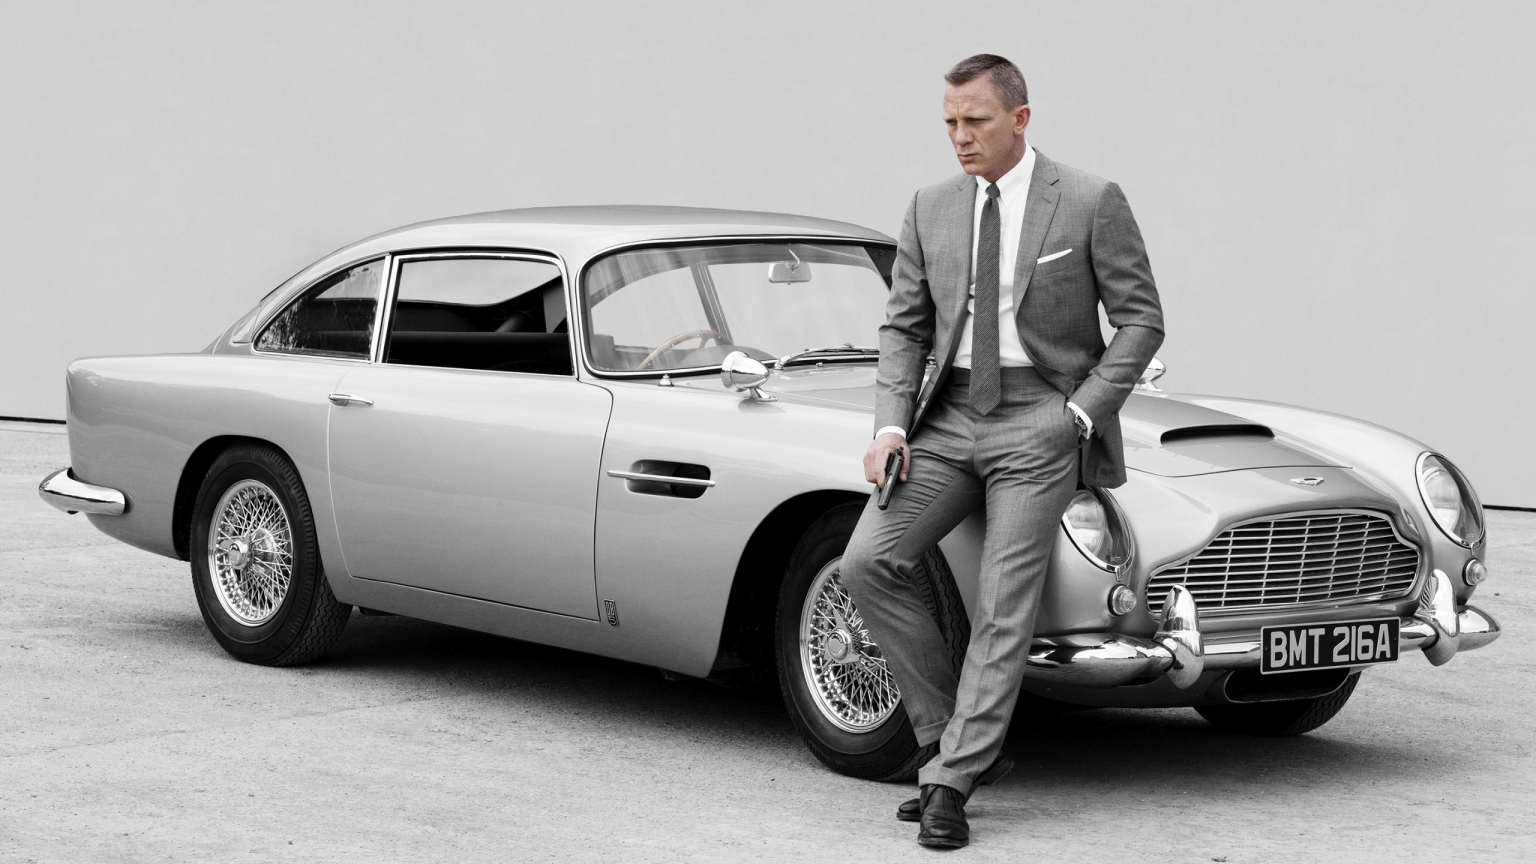 James Bond Skyfall 007 for 1536 x 864 HDTV resolution